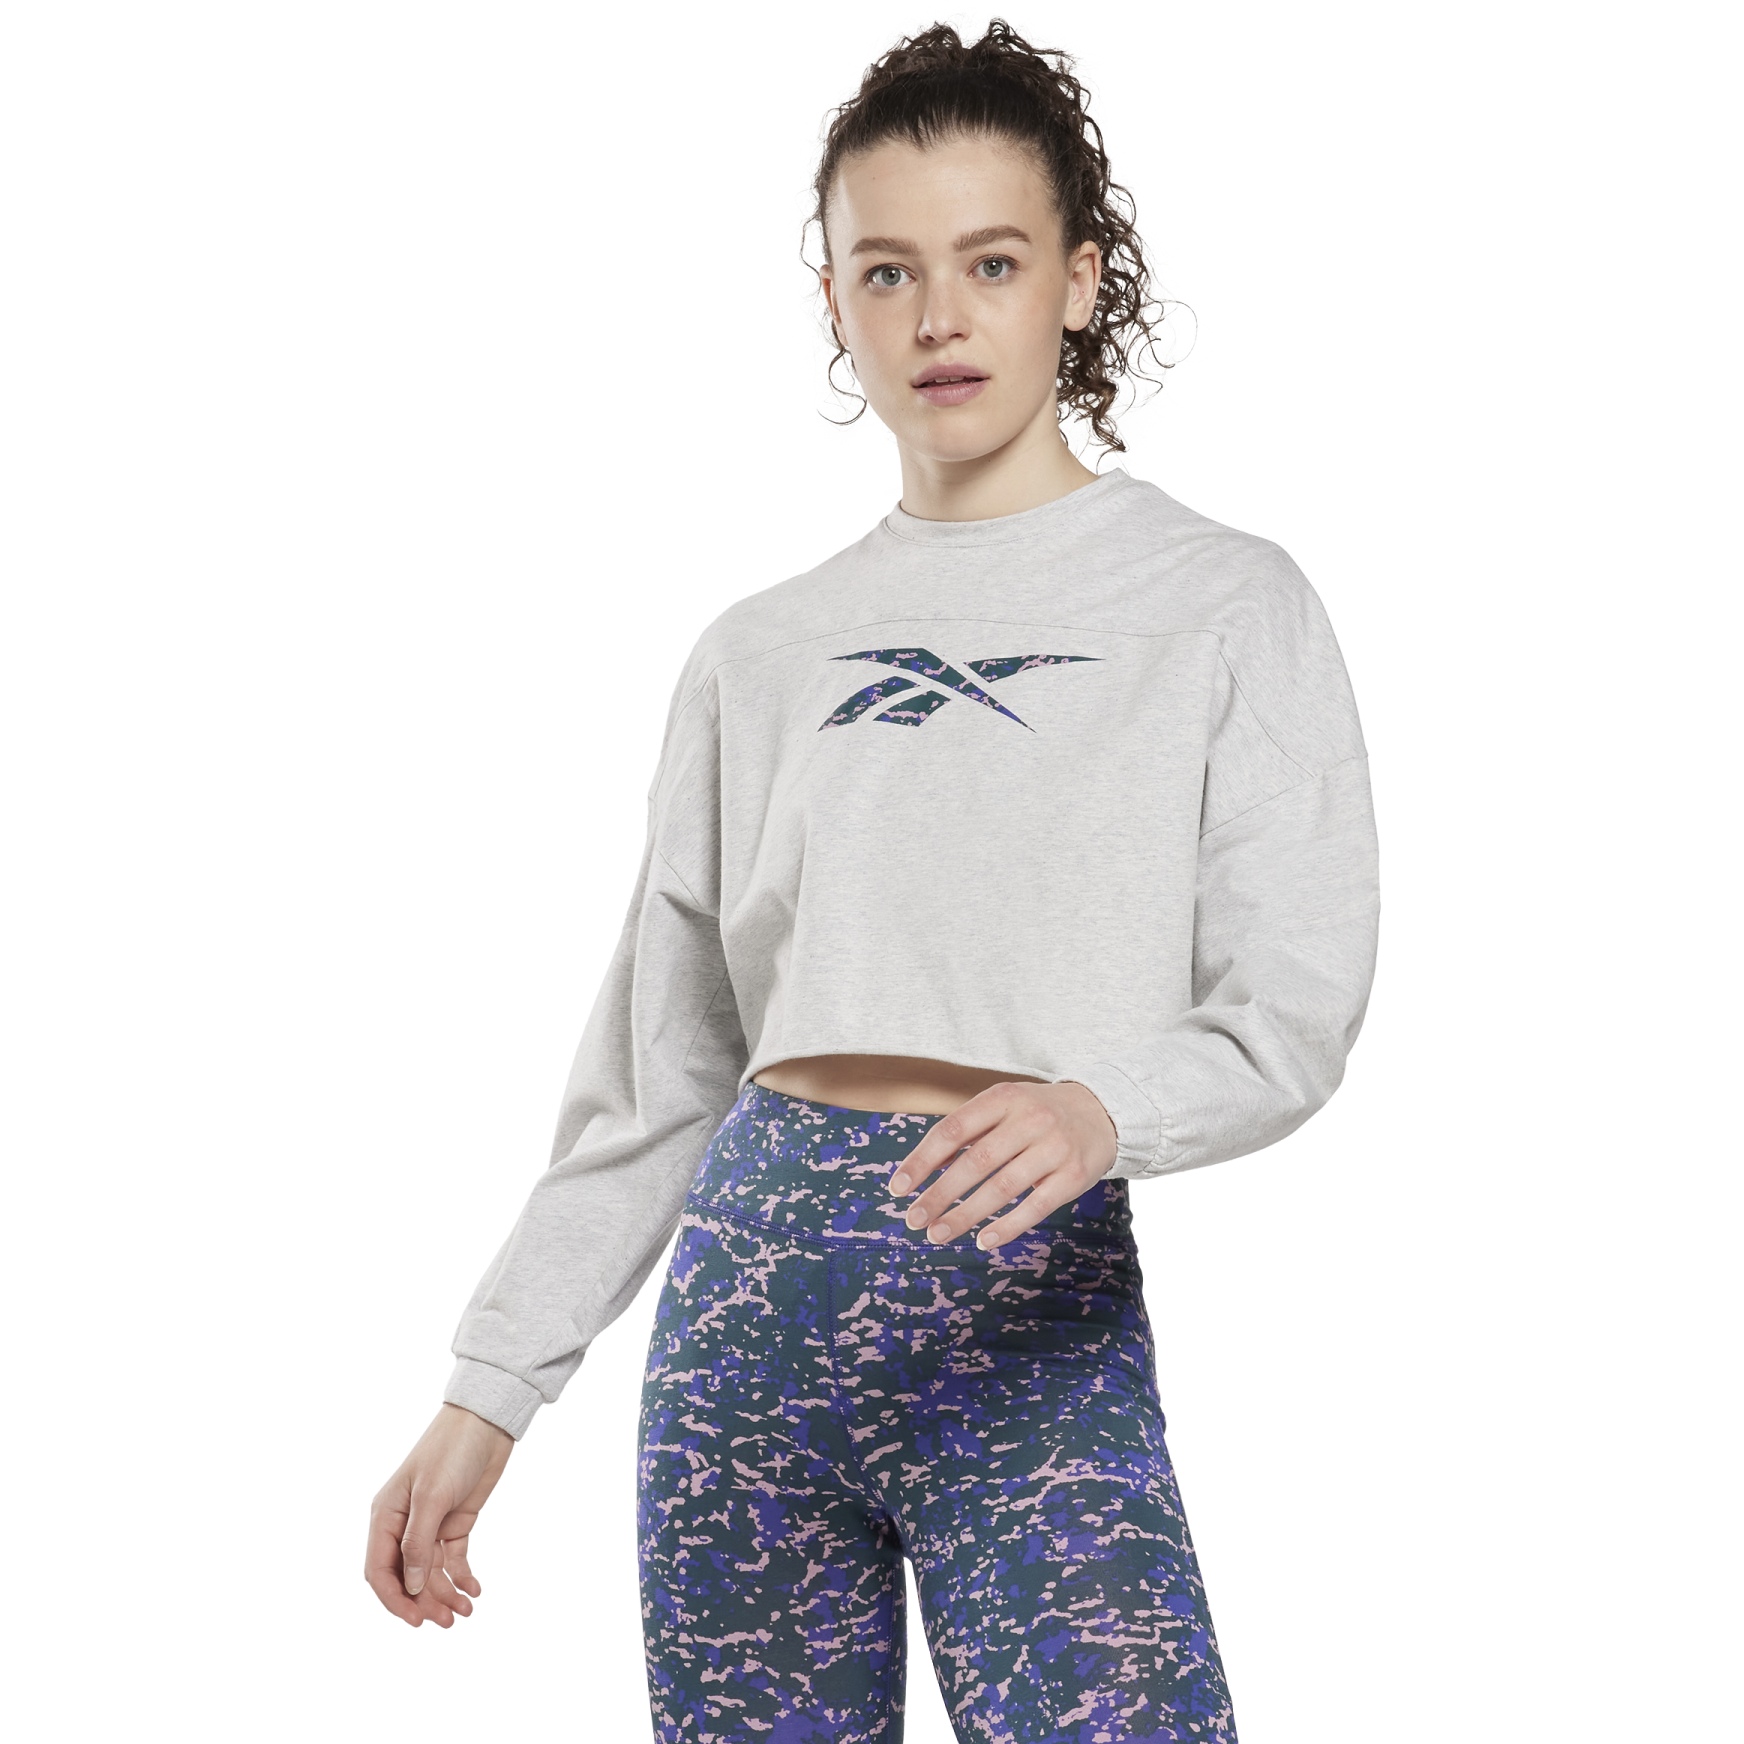 Produktbild von Reebok Modern Safari Sweatshirt Damen - light grey heather